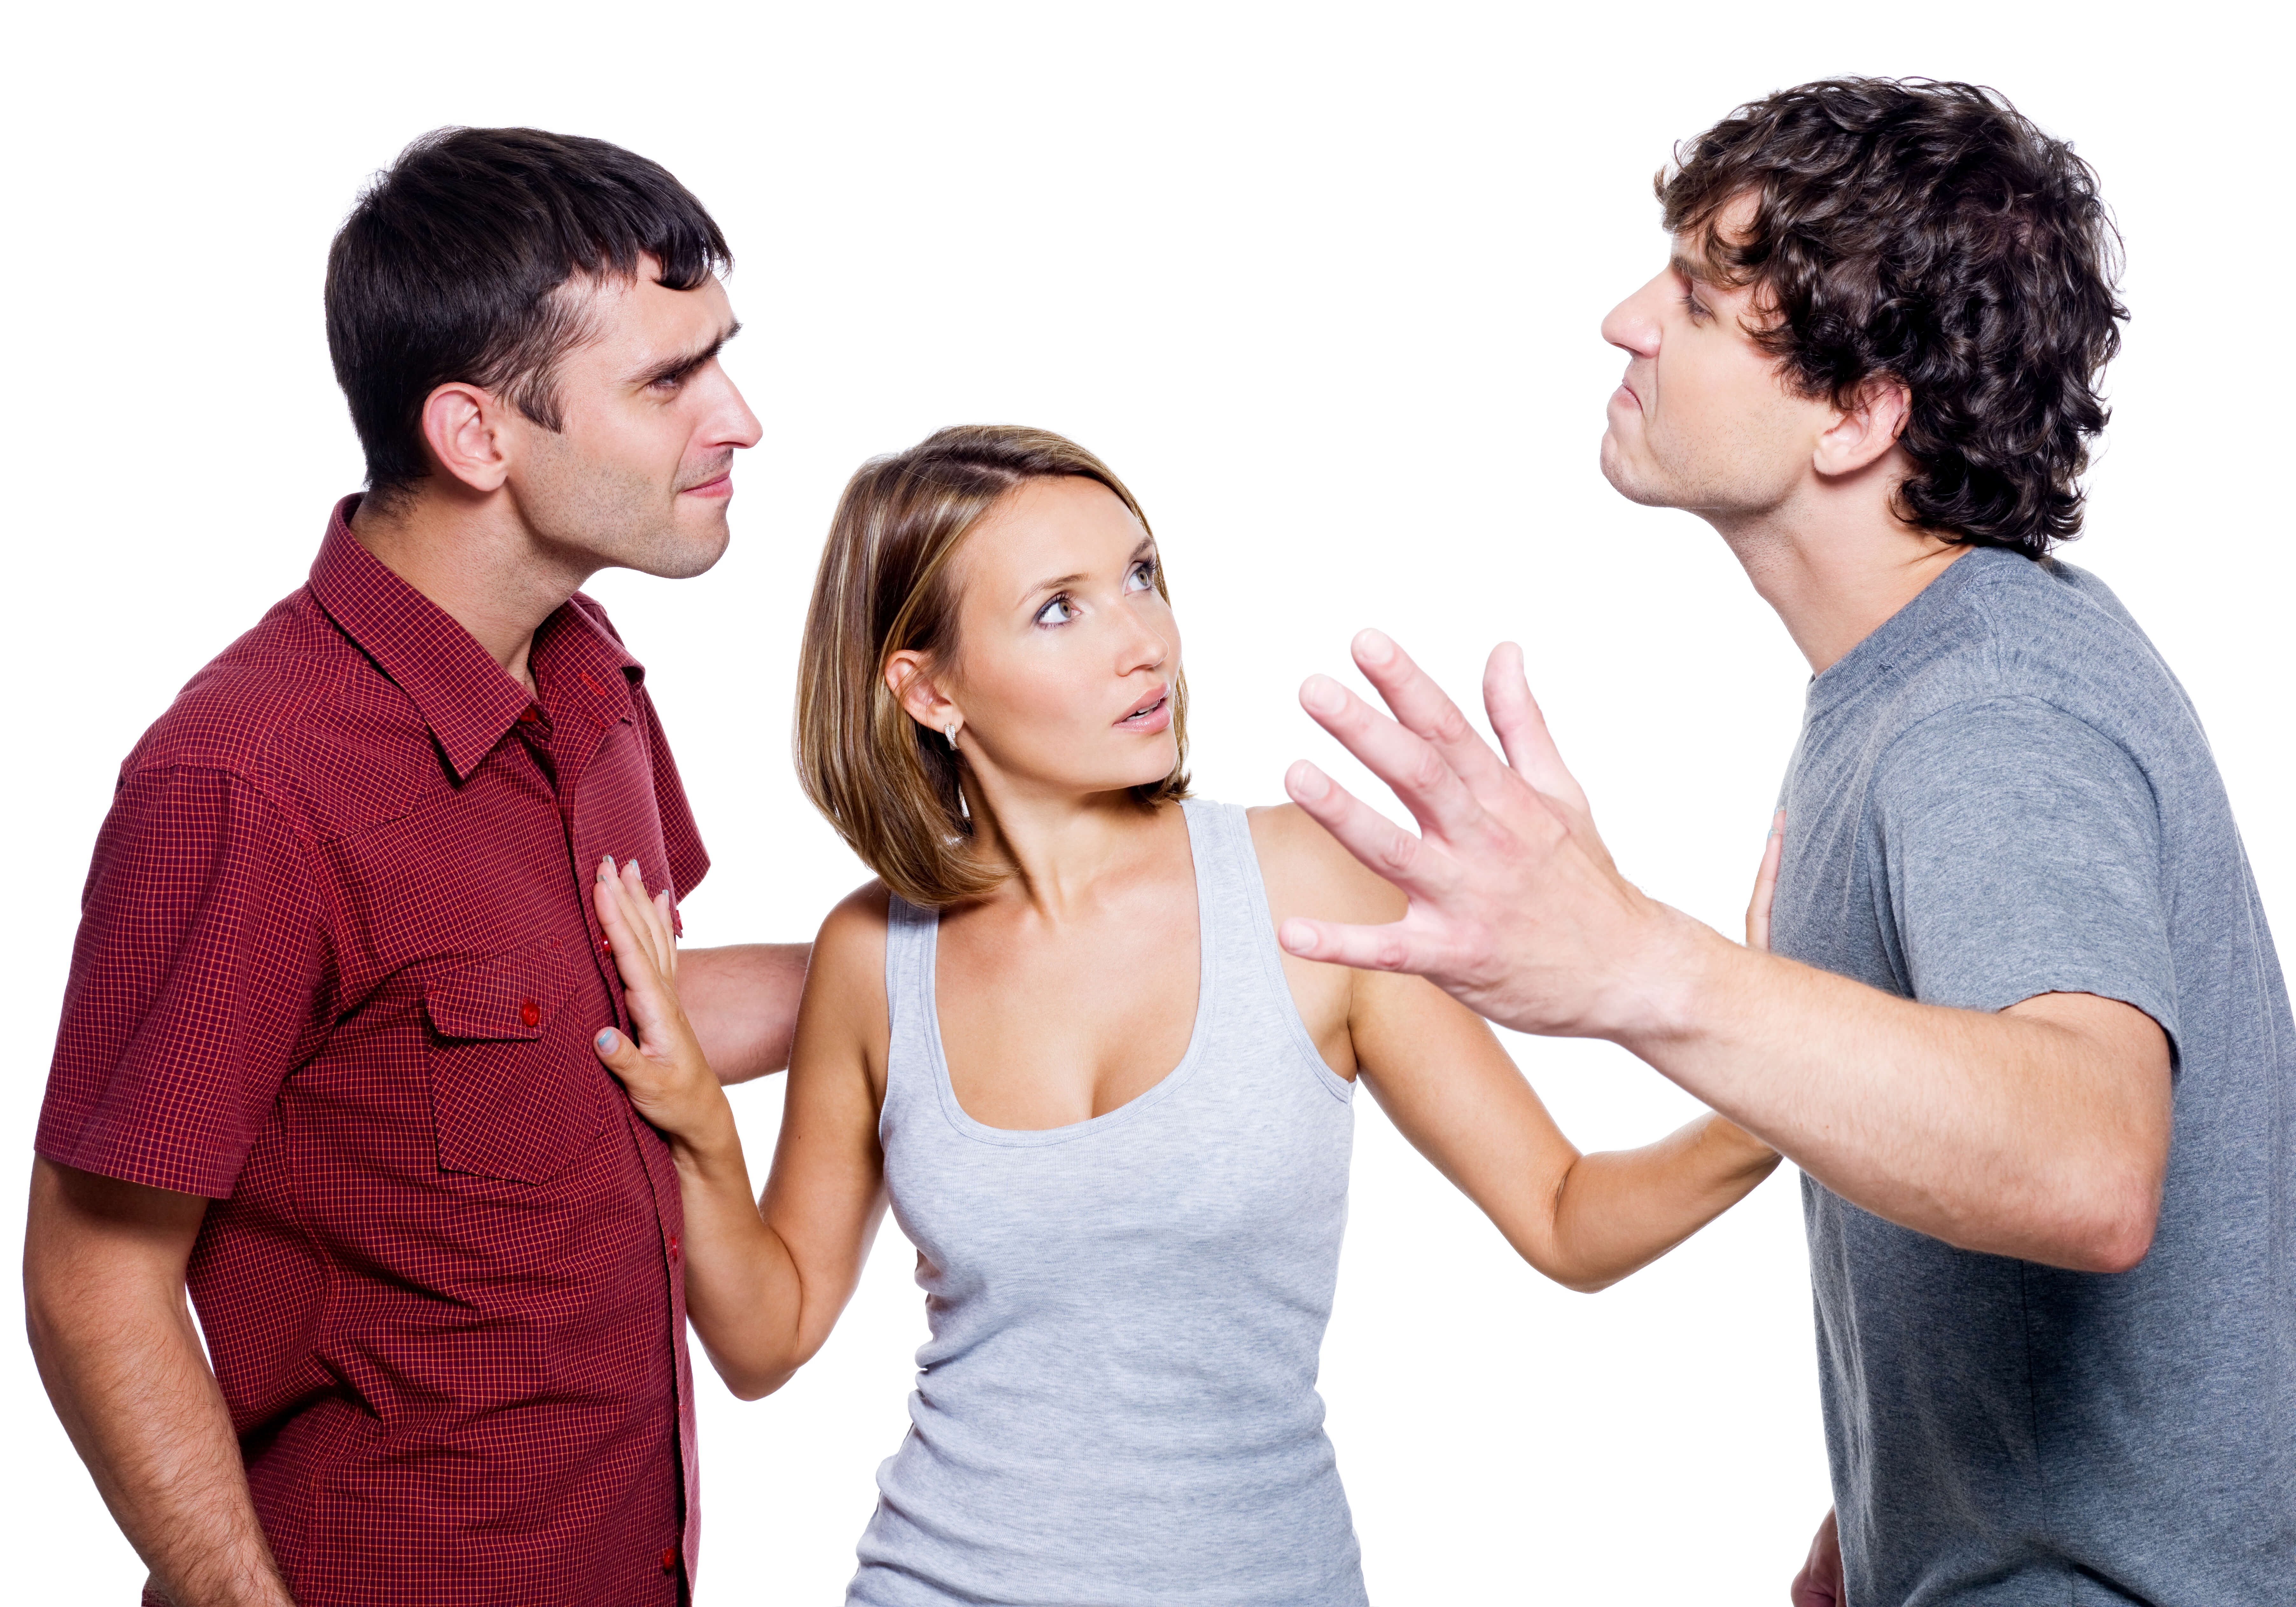 Много спорящих людей. Ссора. Люди ссорятся. Мужчины спорят. Мужчина и женщина спорят.